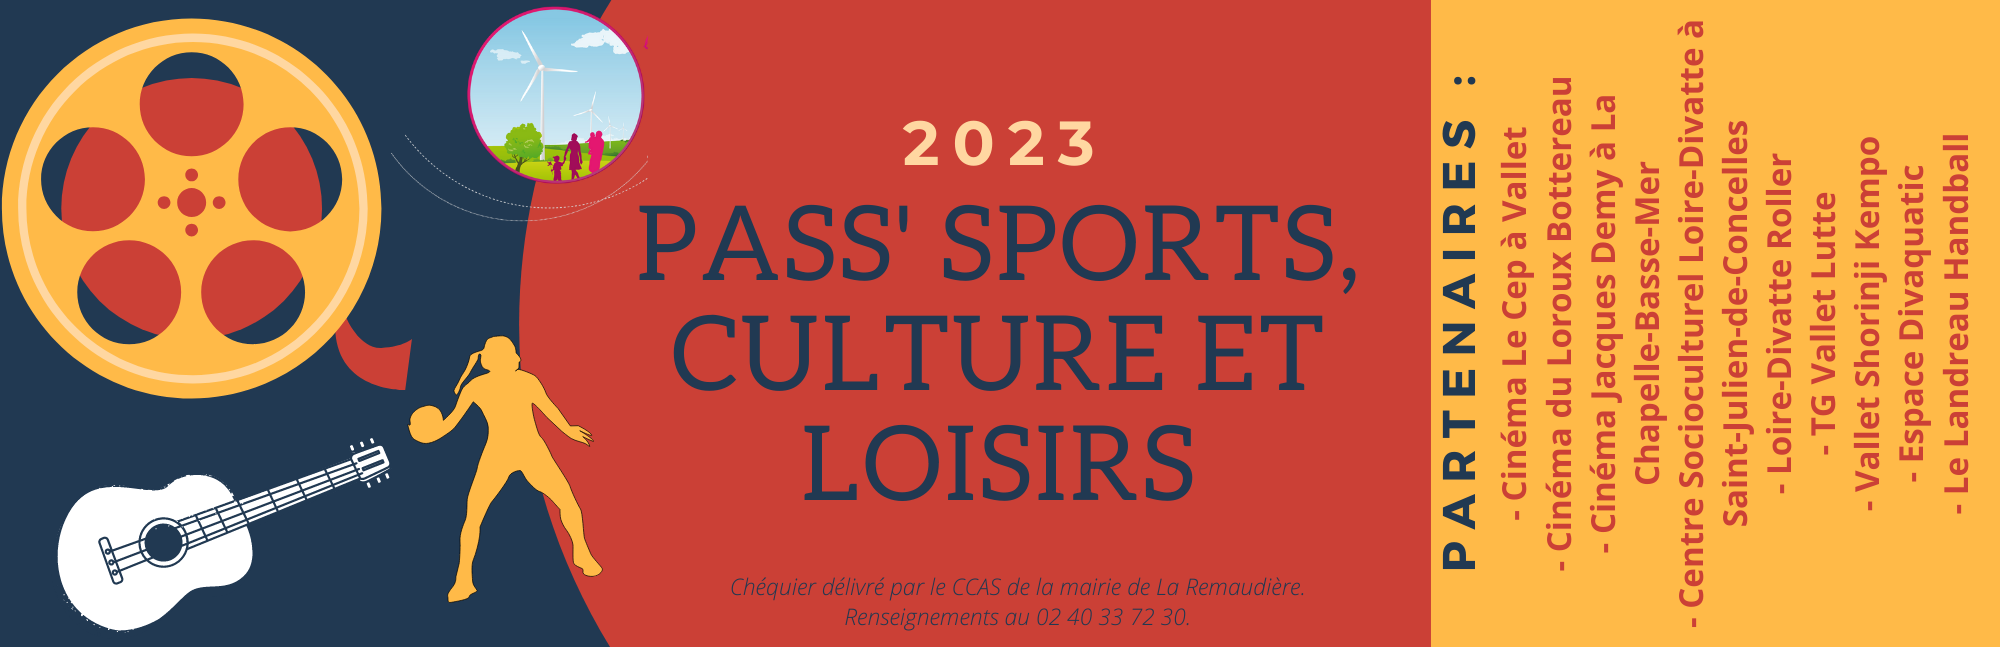 Pass sports et loisirs - page présentation recto.png